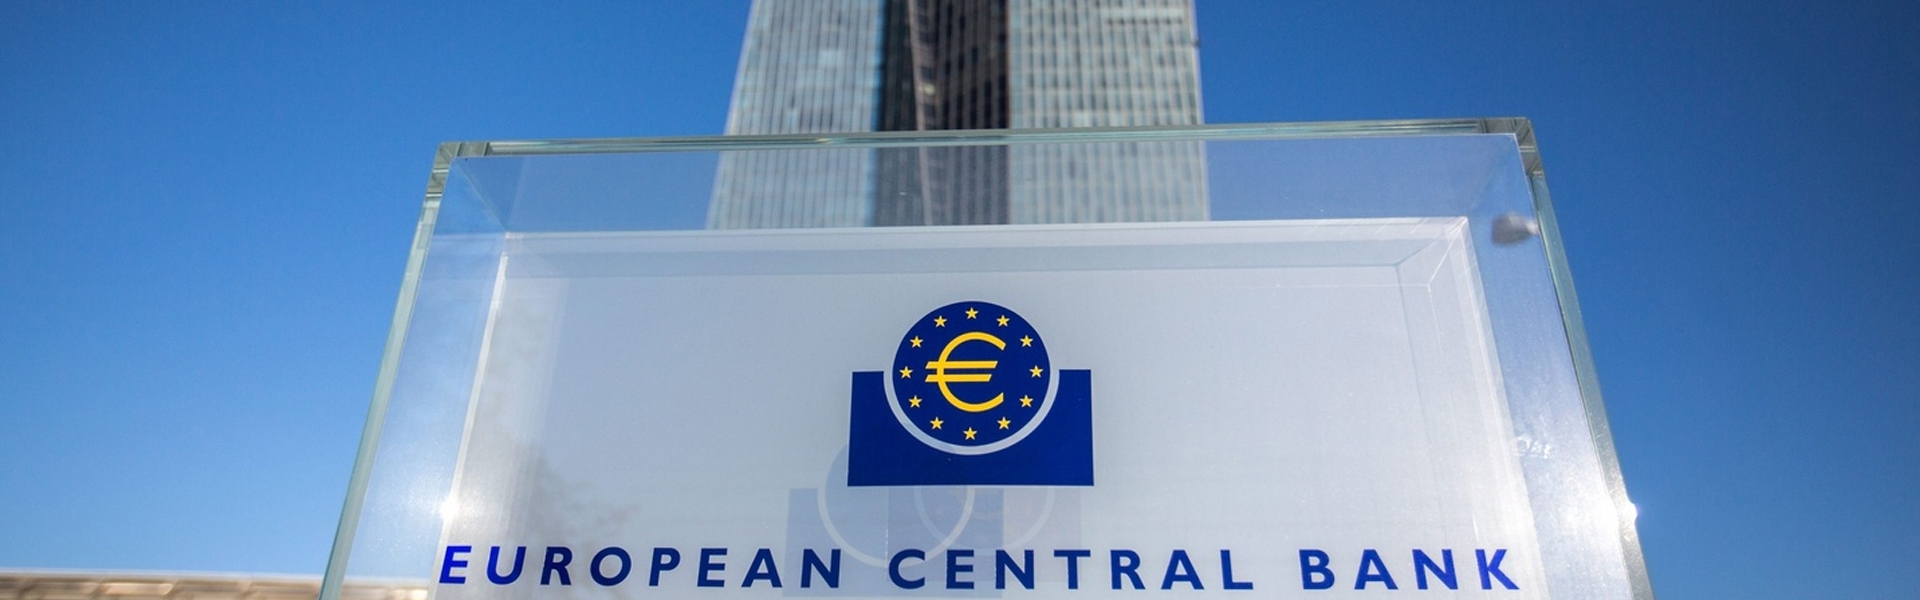 Европейский центральный банк VS Банк России: Набиуллина против экономической логики